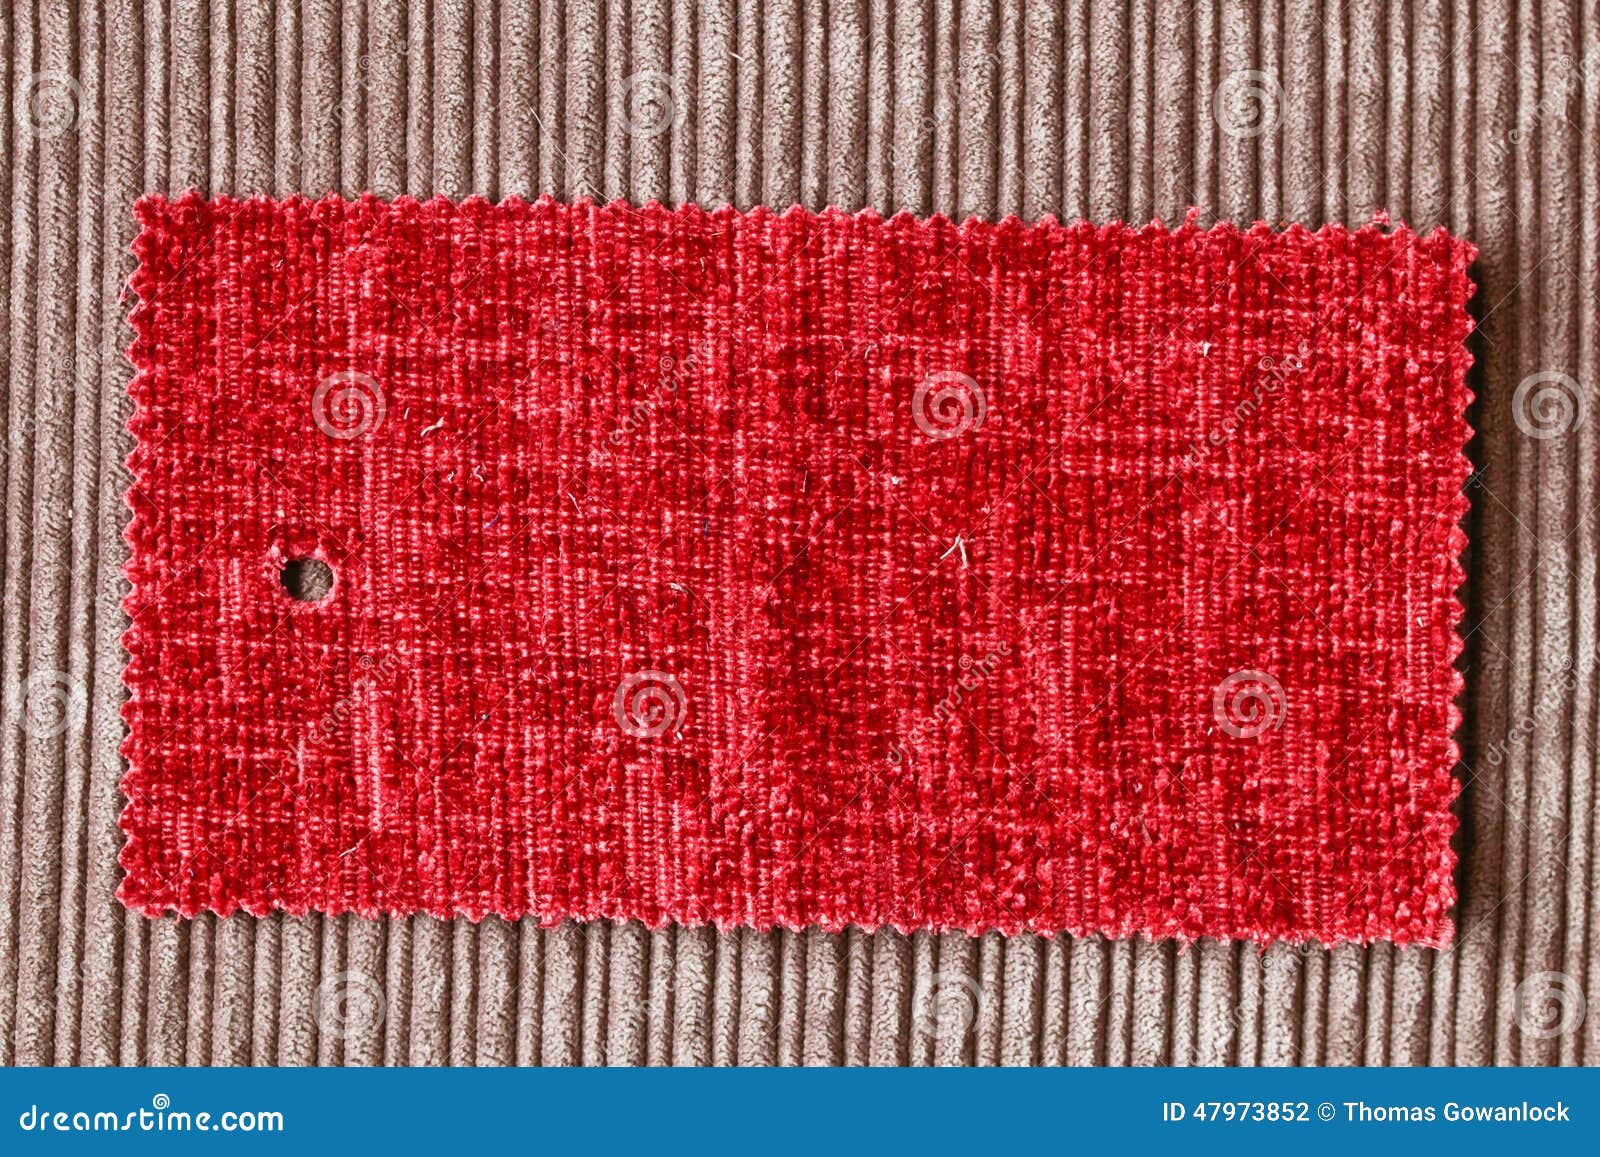 Большой кусок ткани 5. Кусок красной ткани. Кусочек ткани. Кусочек ткани рисунок. Большой кусок ткани красной.